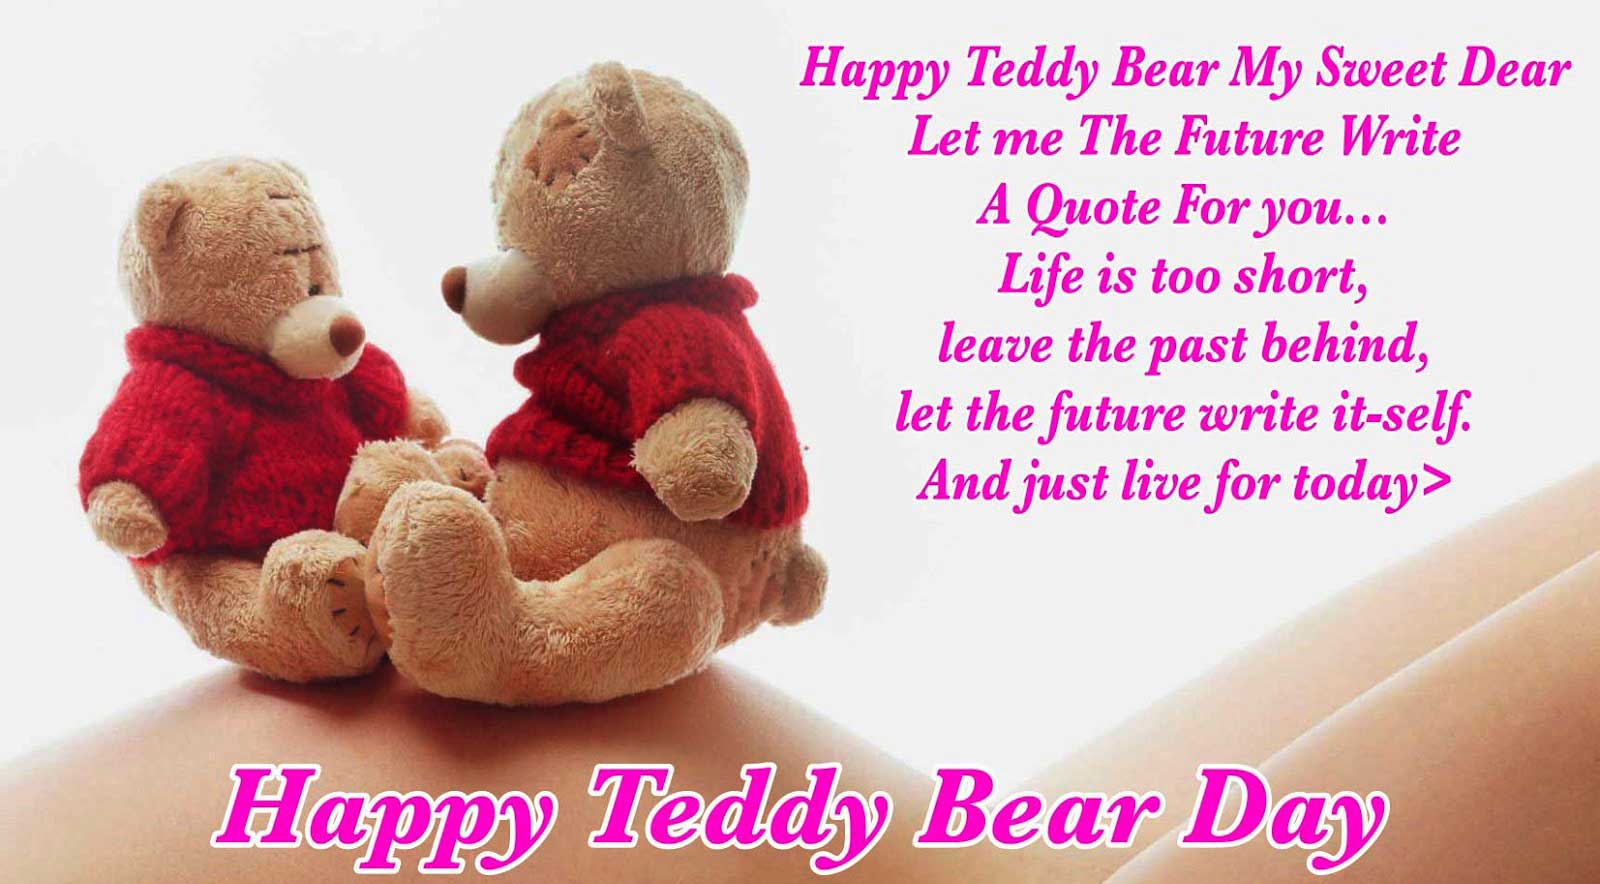 Best-Wishe-on-Teddy-day-valentine-week